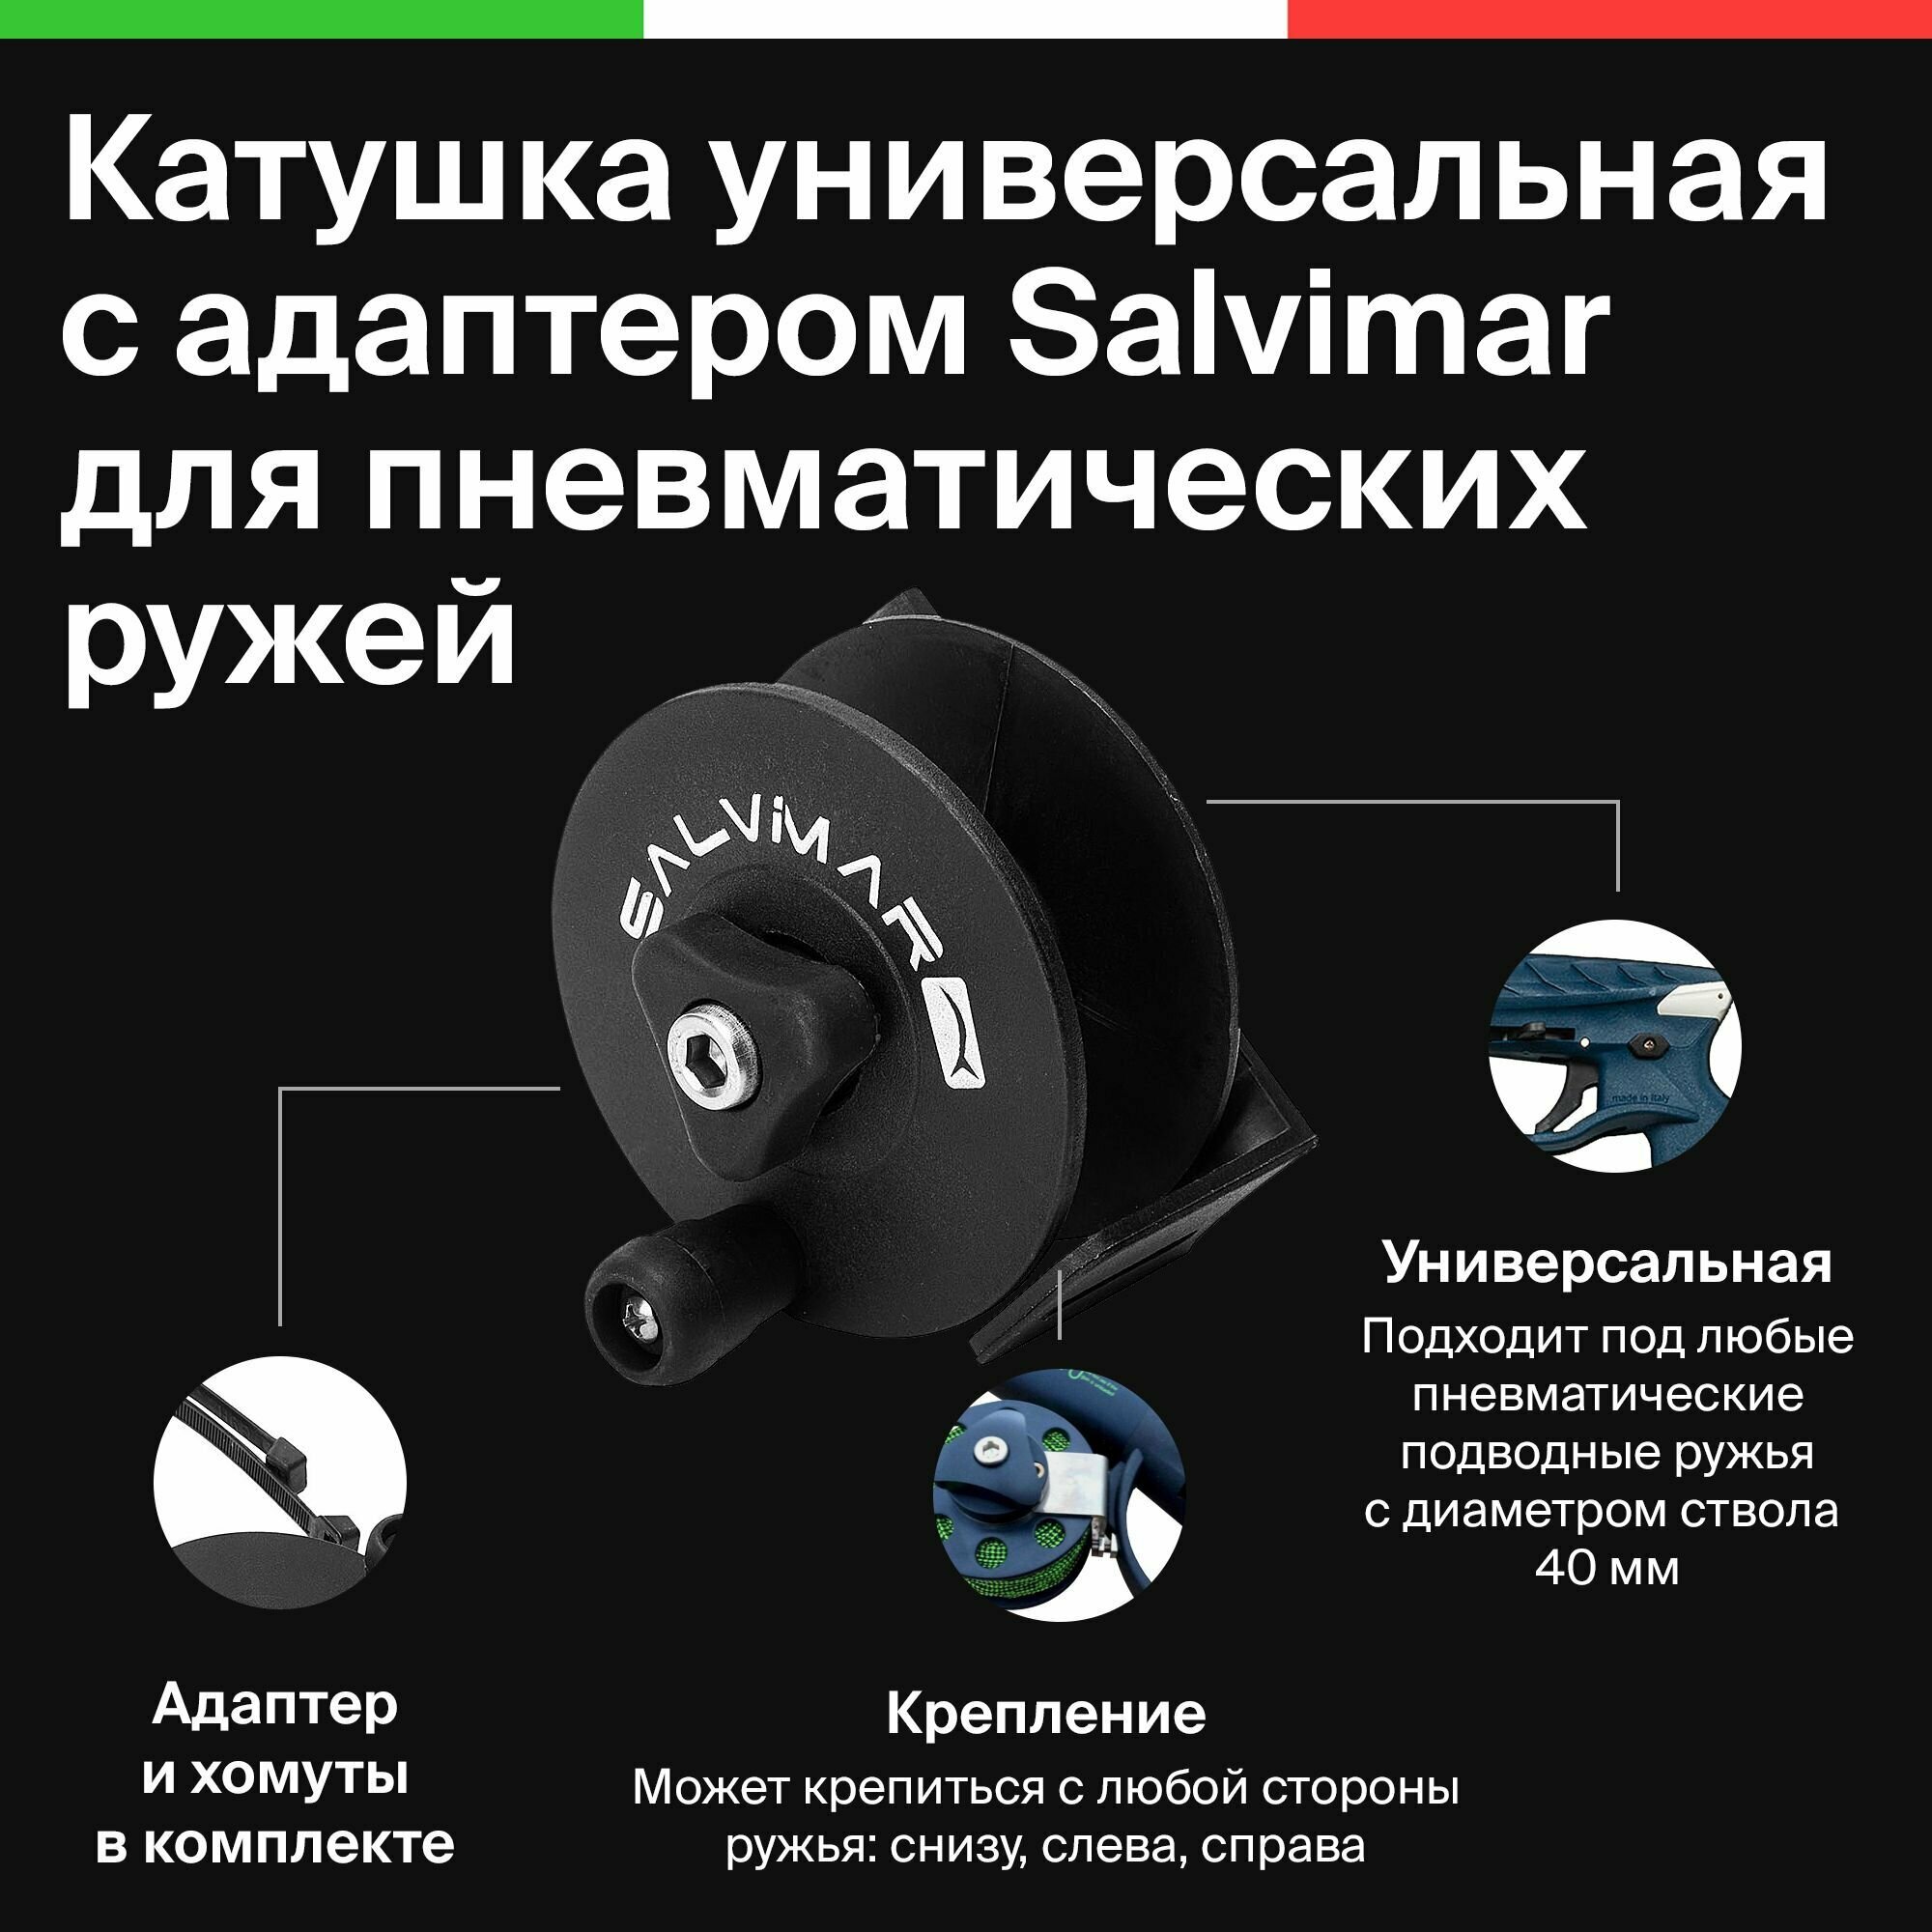 Катушка для подводного пневматического ружья универсальная Salvimar